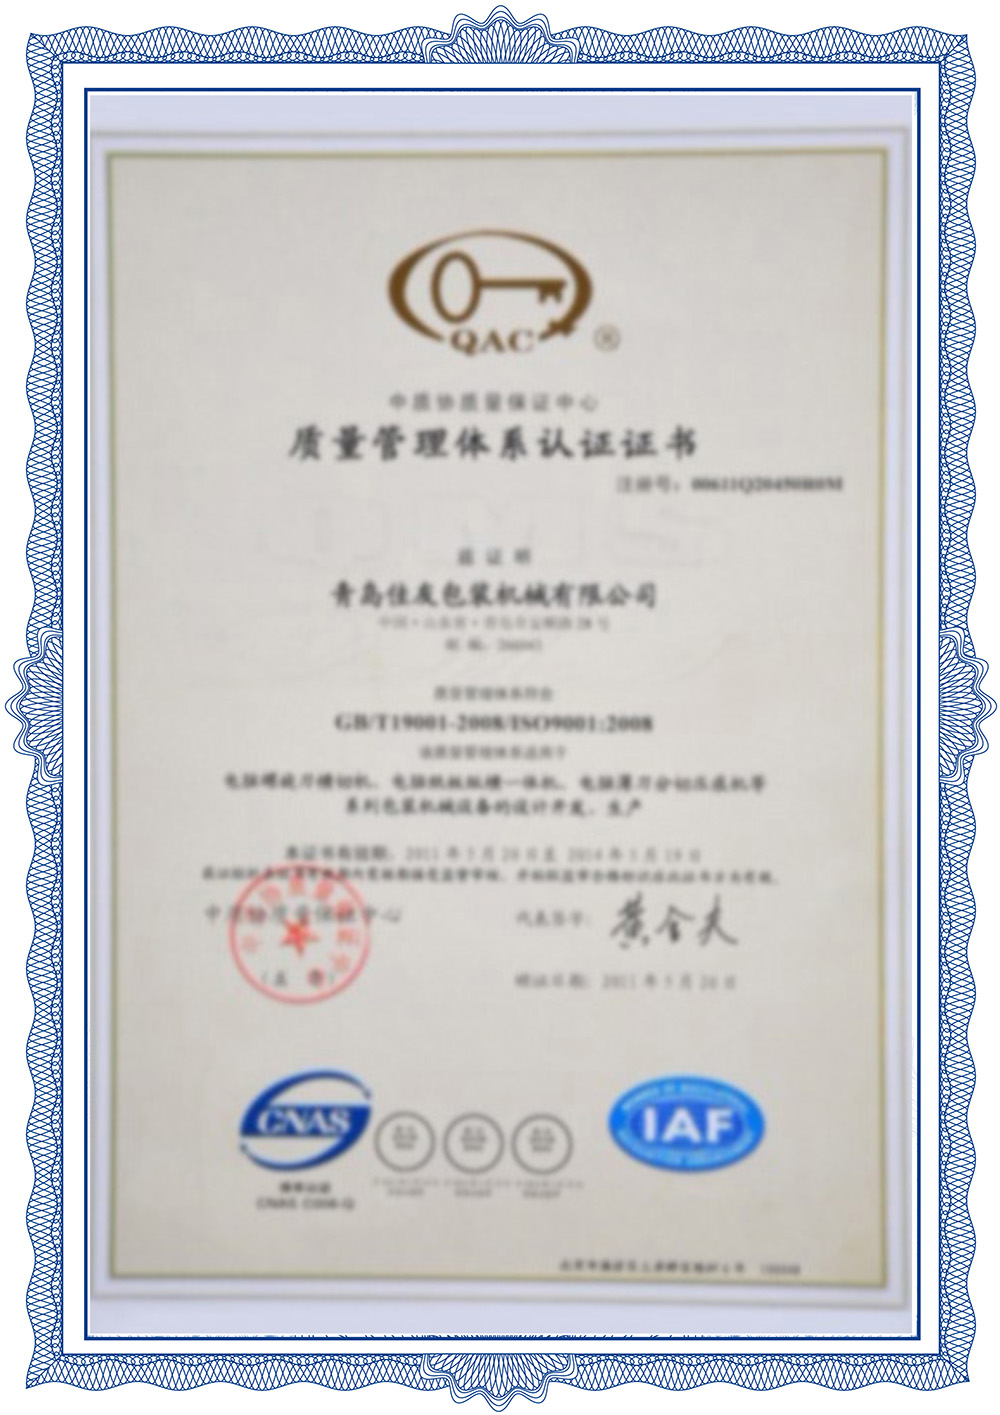 Certificering van het kwaliteitsmanagementsysteem